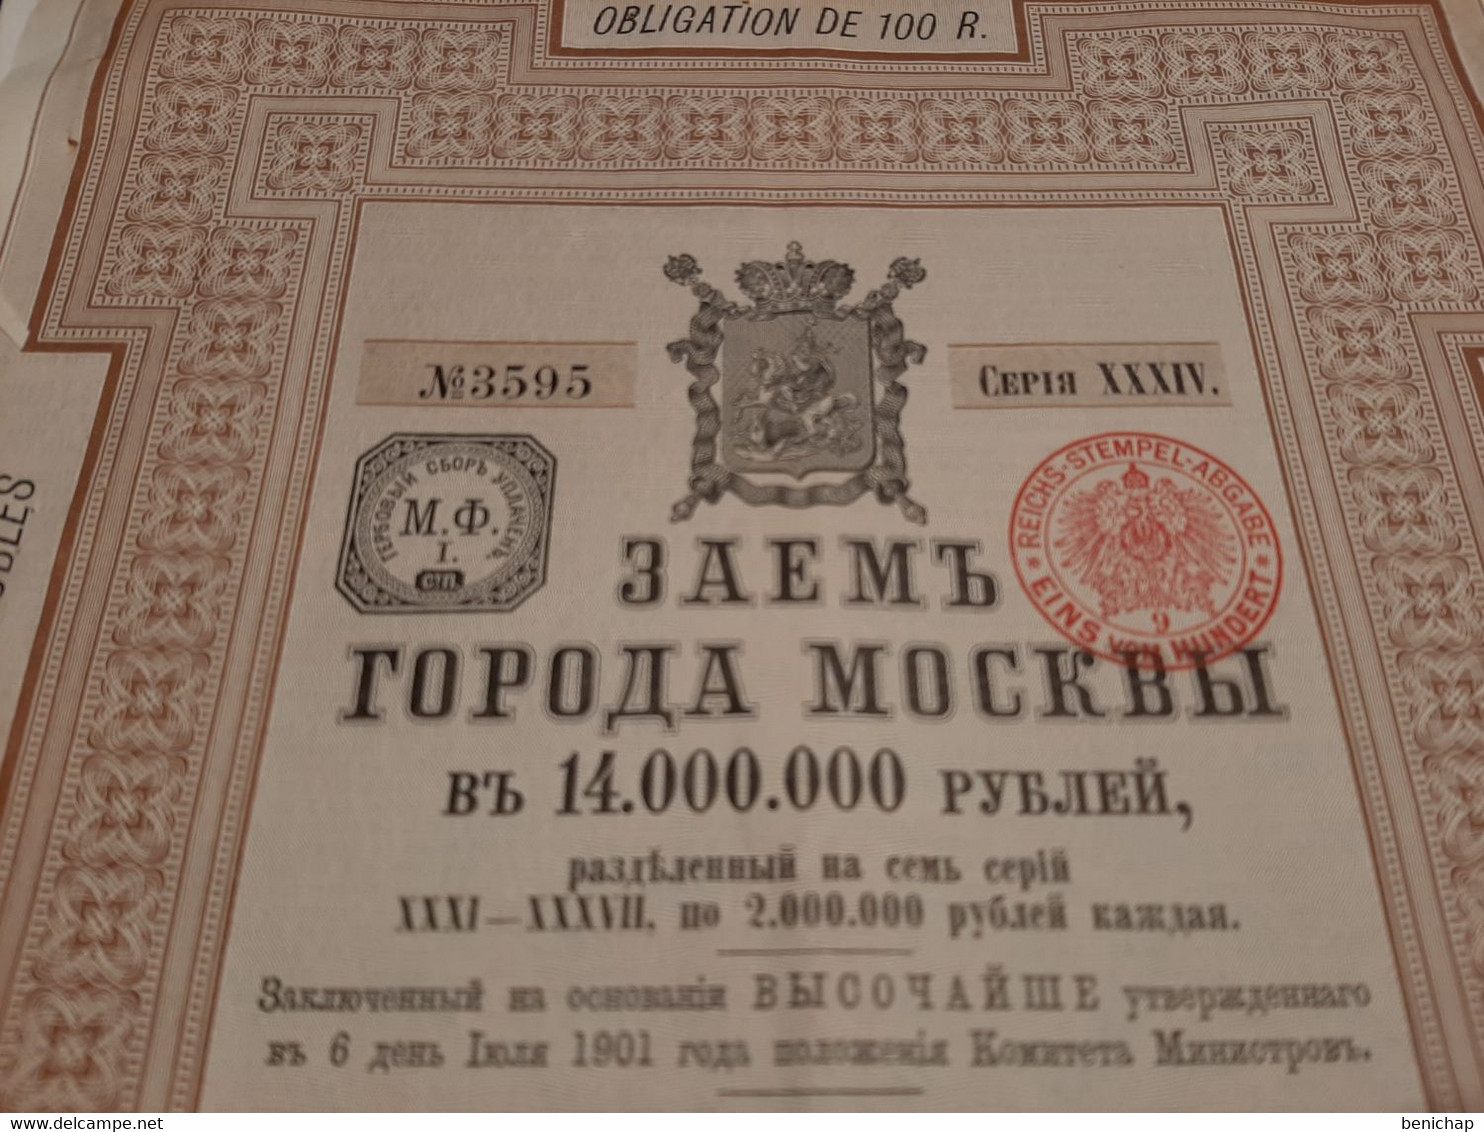 Ville De Moscou - Emprunt Municipal - Série 31-37 - Obligation De 100 Rbls - 13 Septembre 1901. - Russia